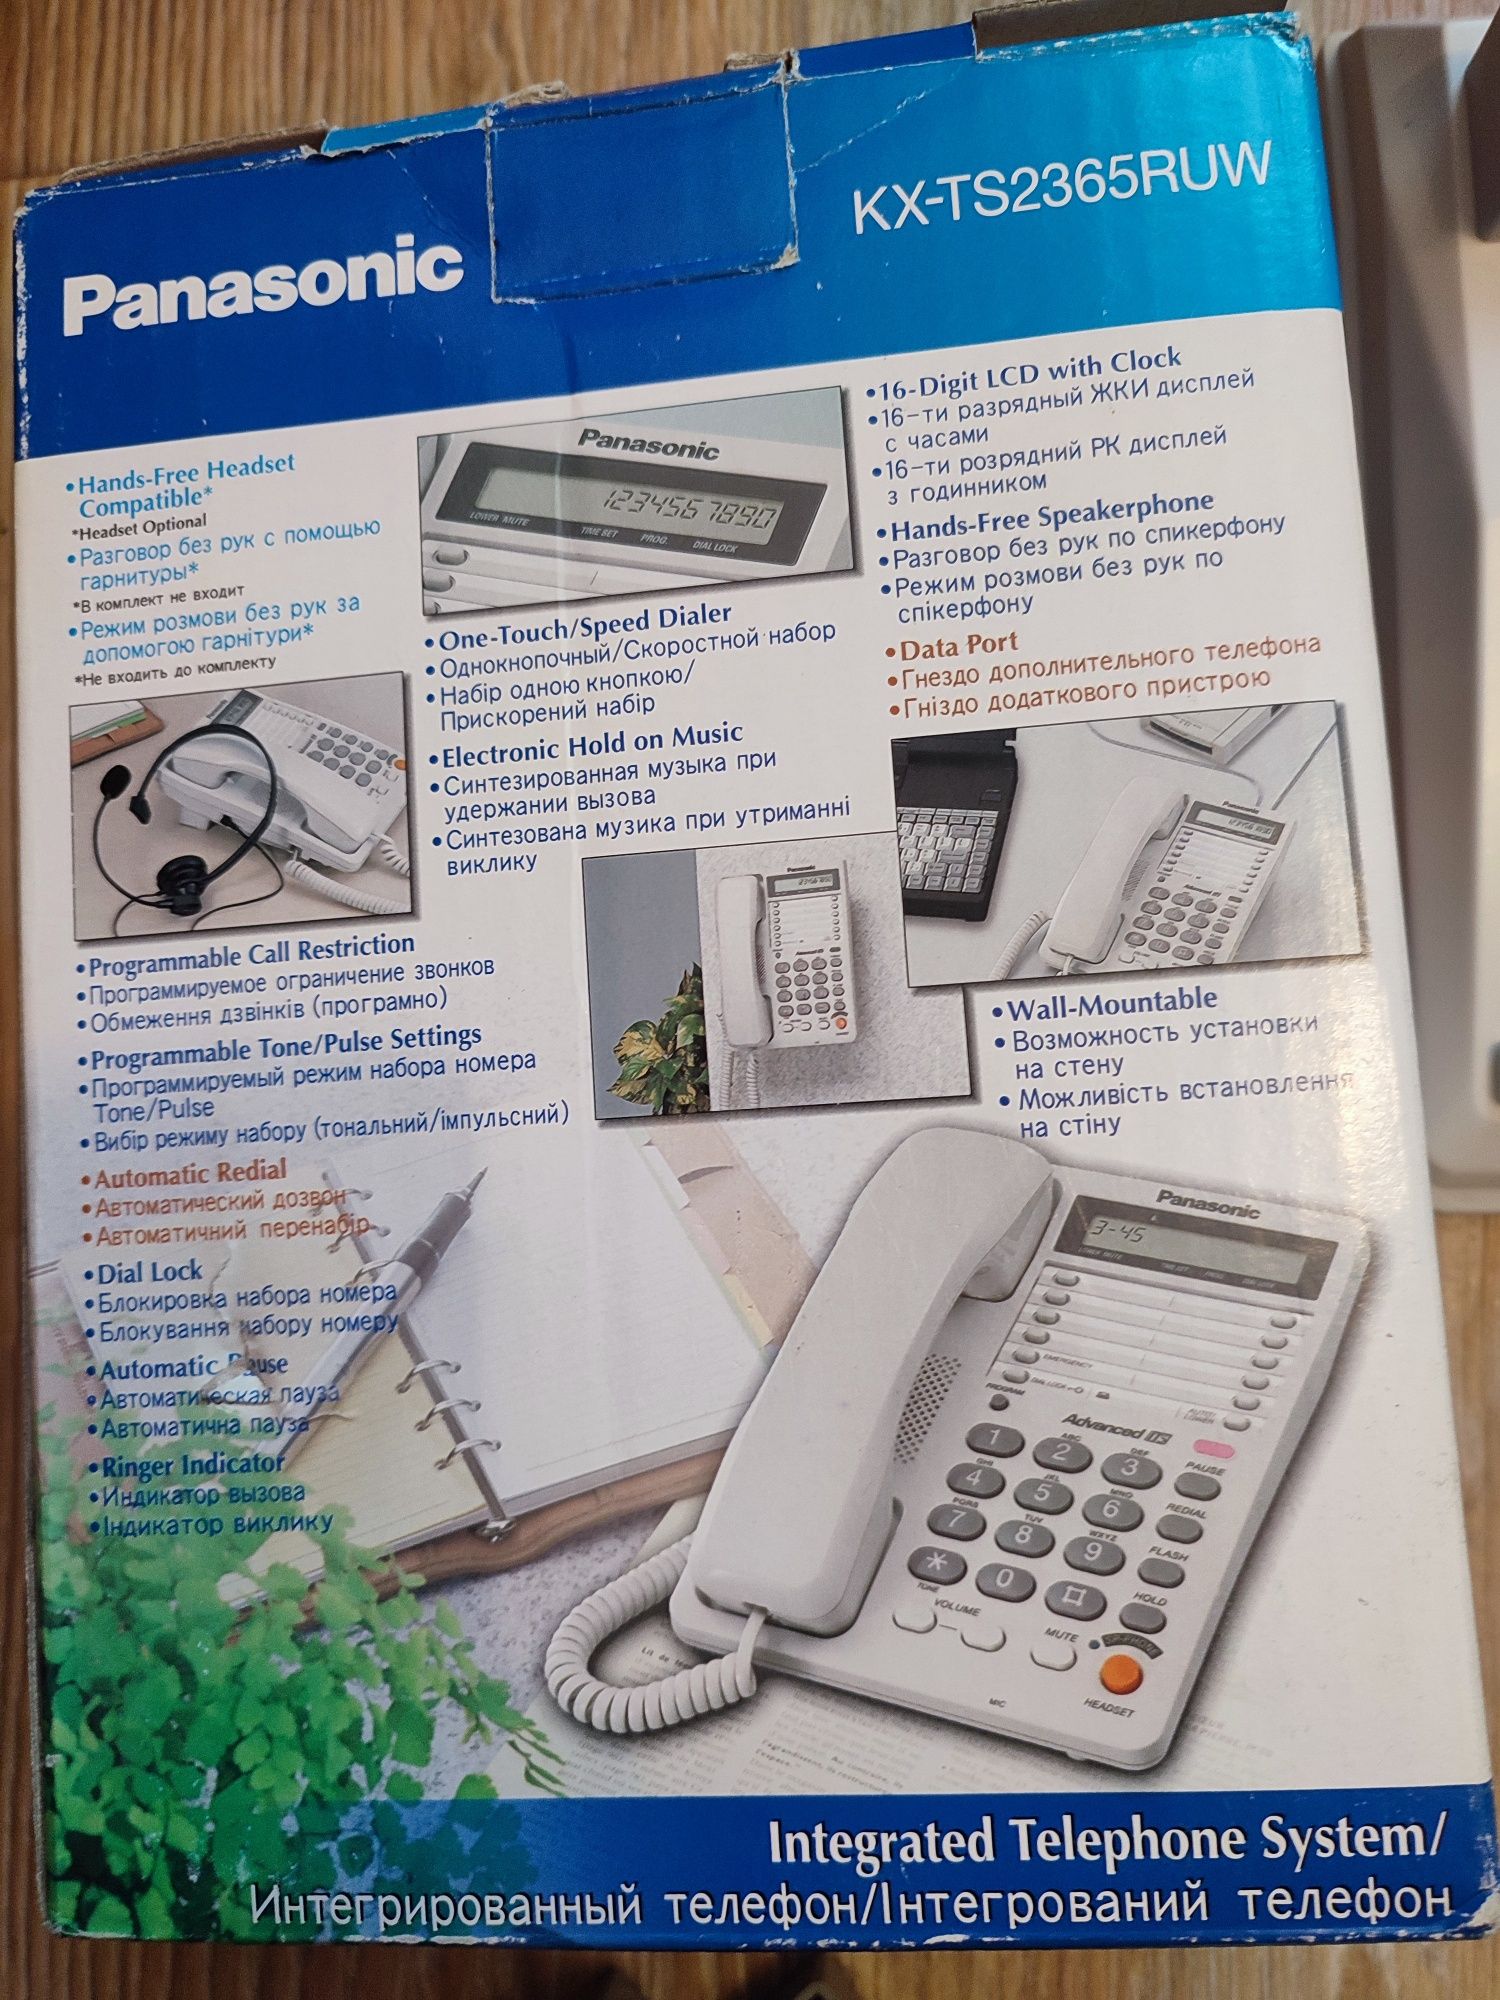 Panasonic kh-ts2365ruw